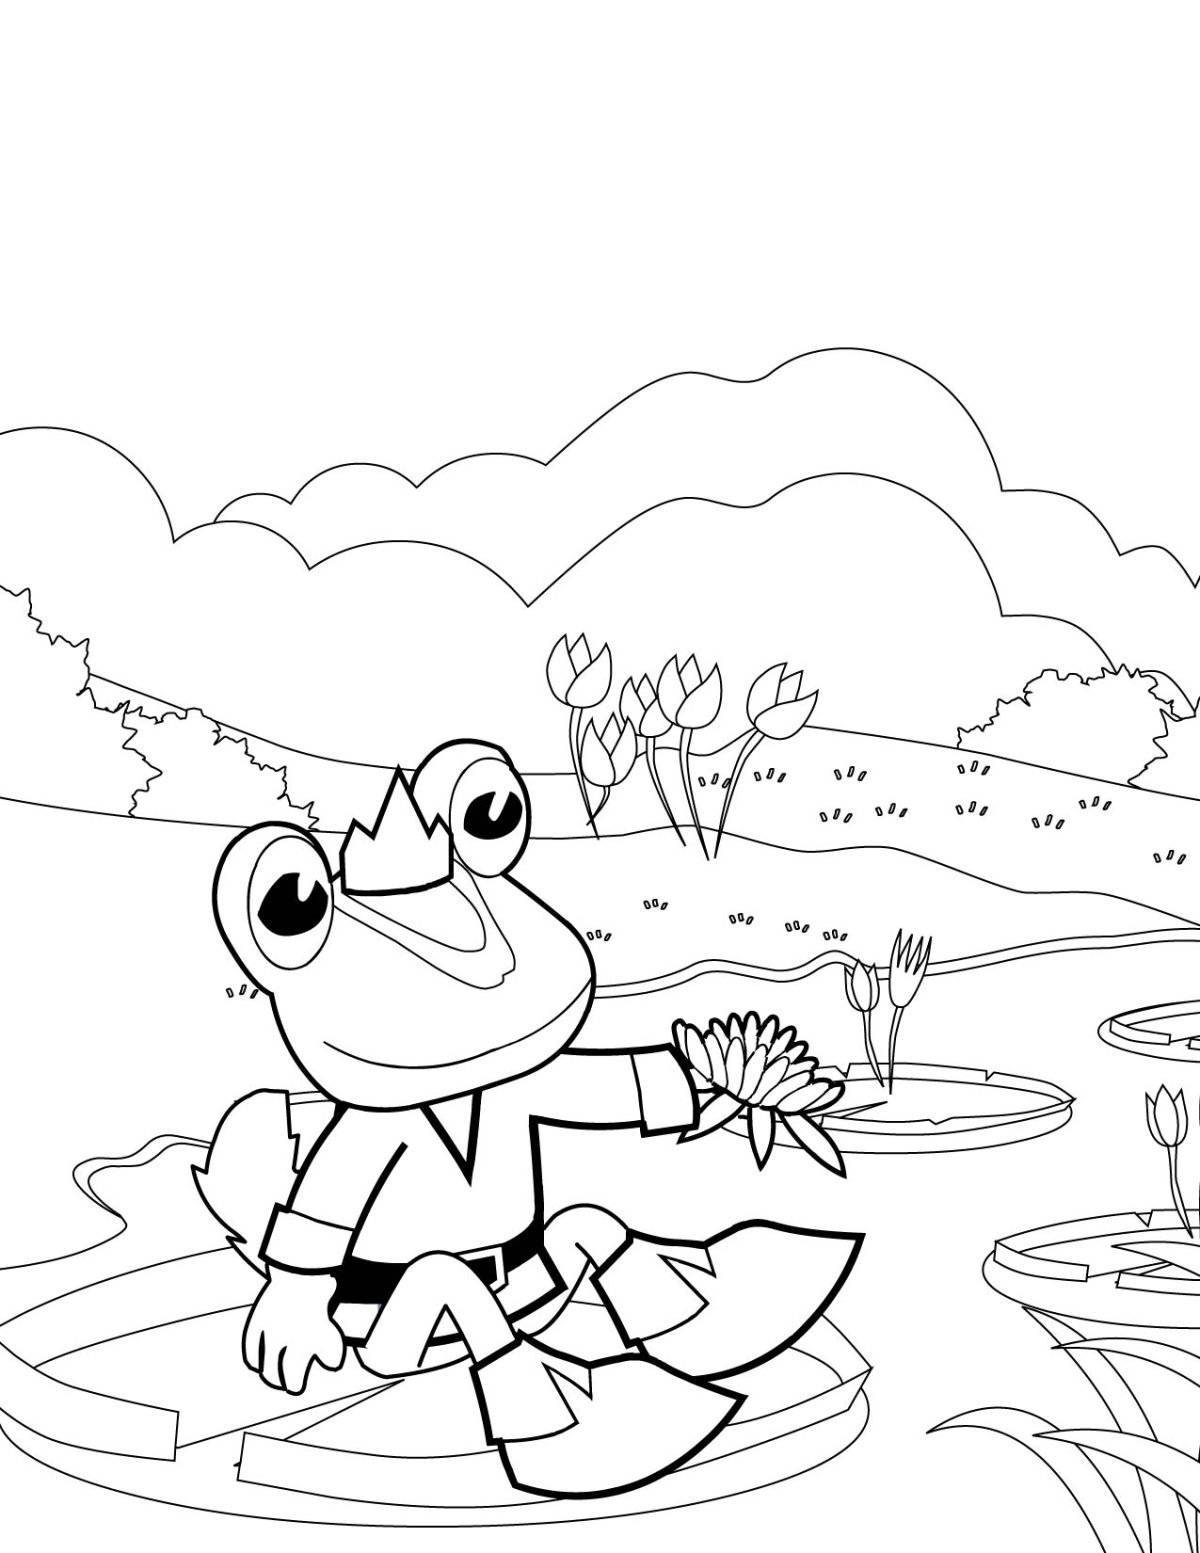 Curious frog traveler